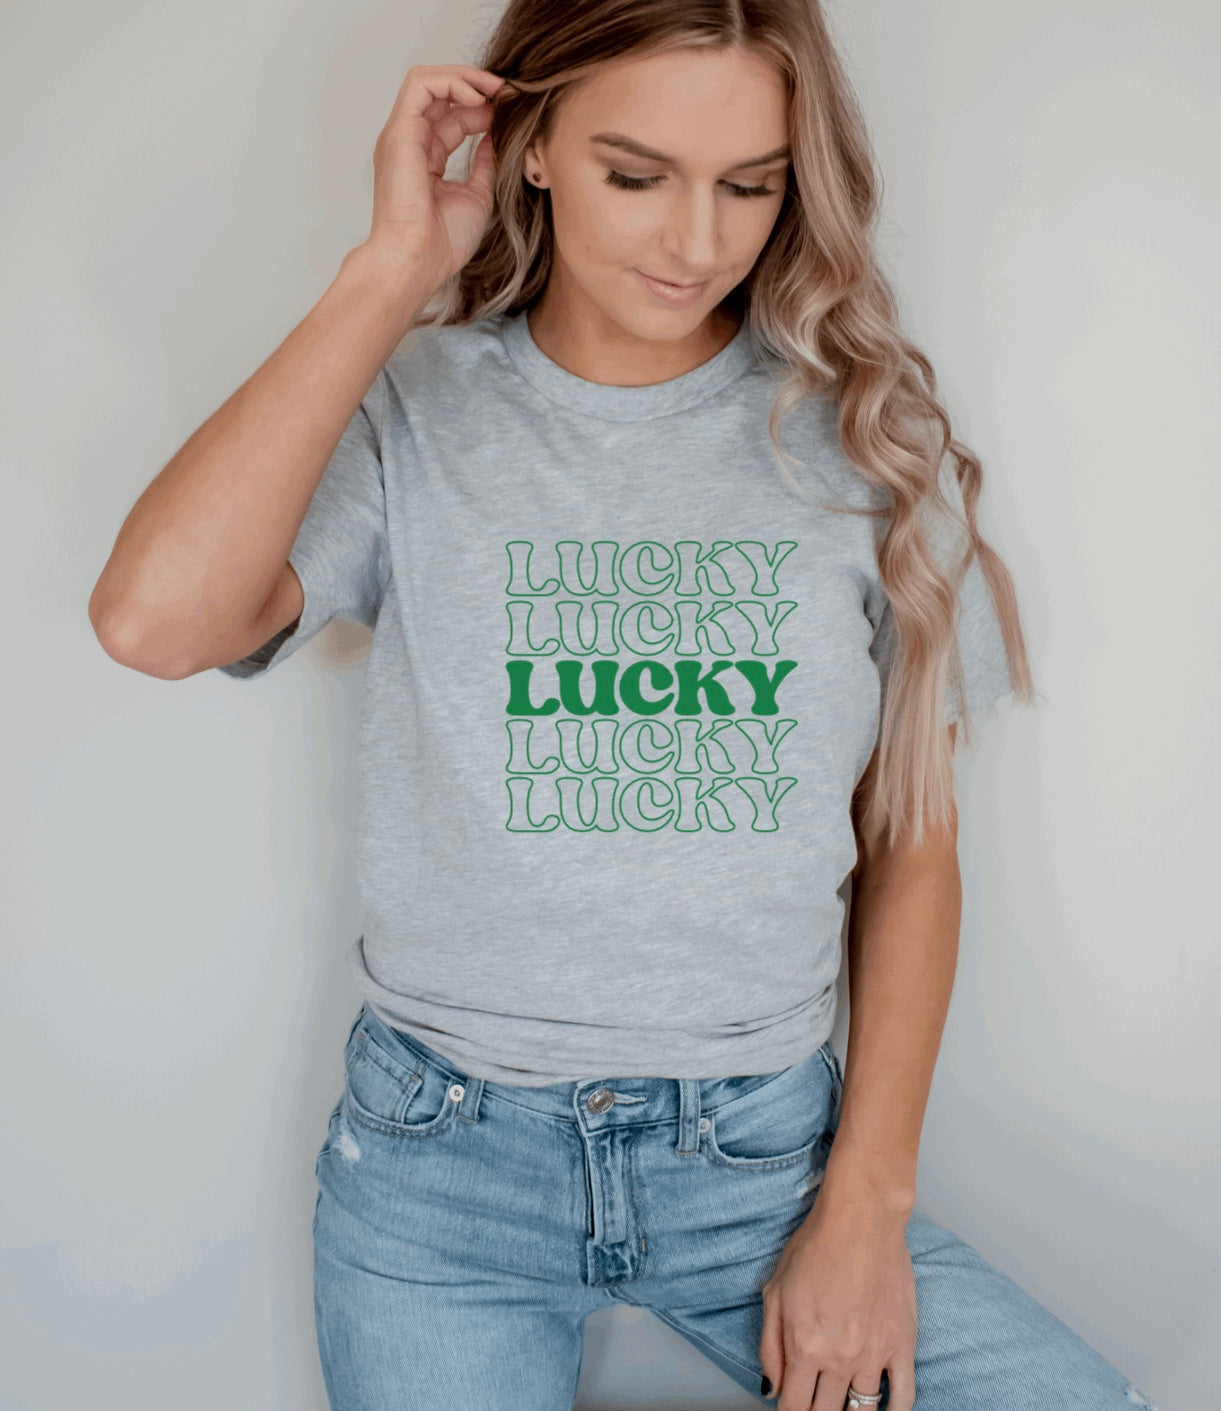 Lucky t-shirt 